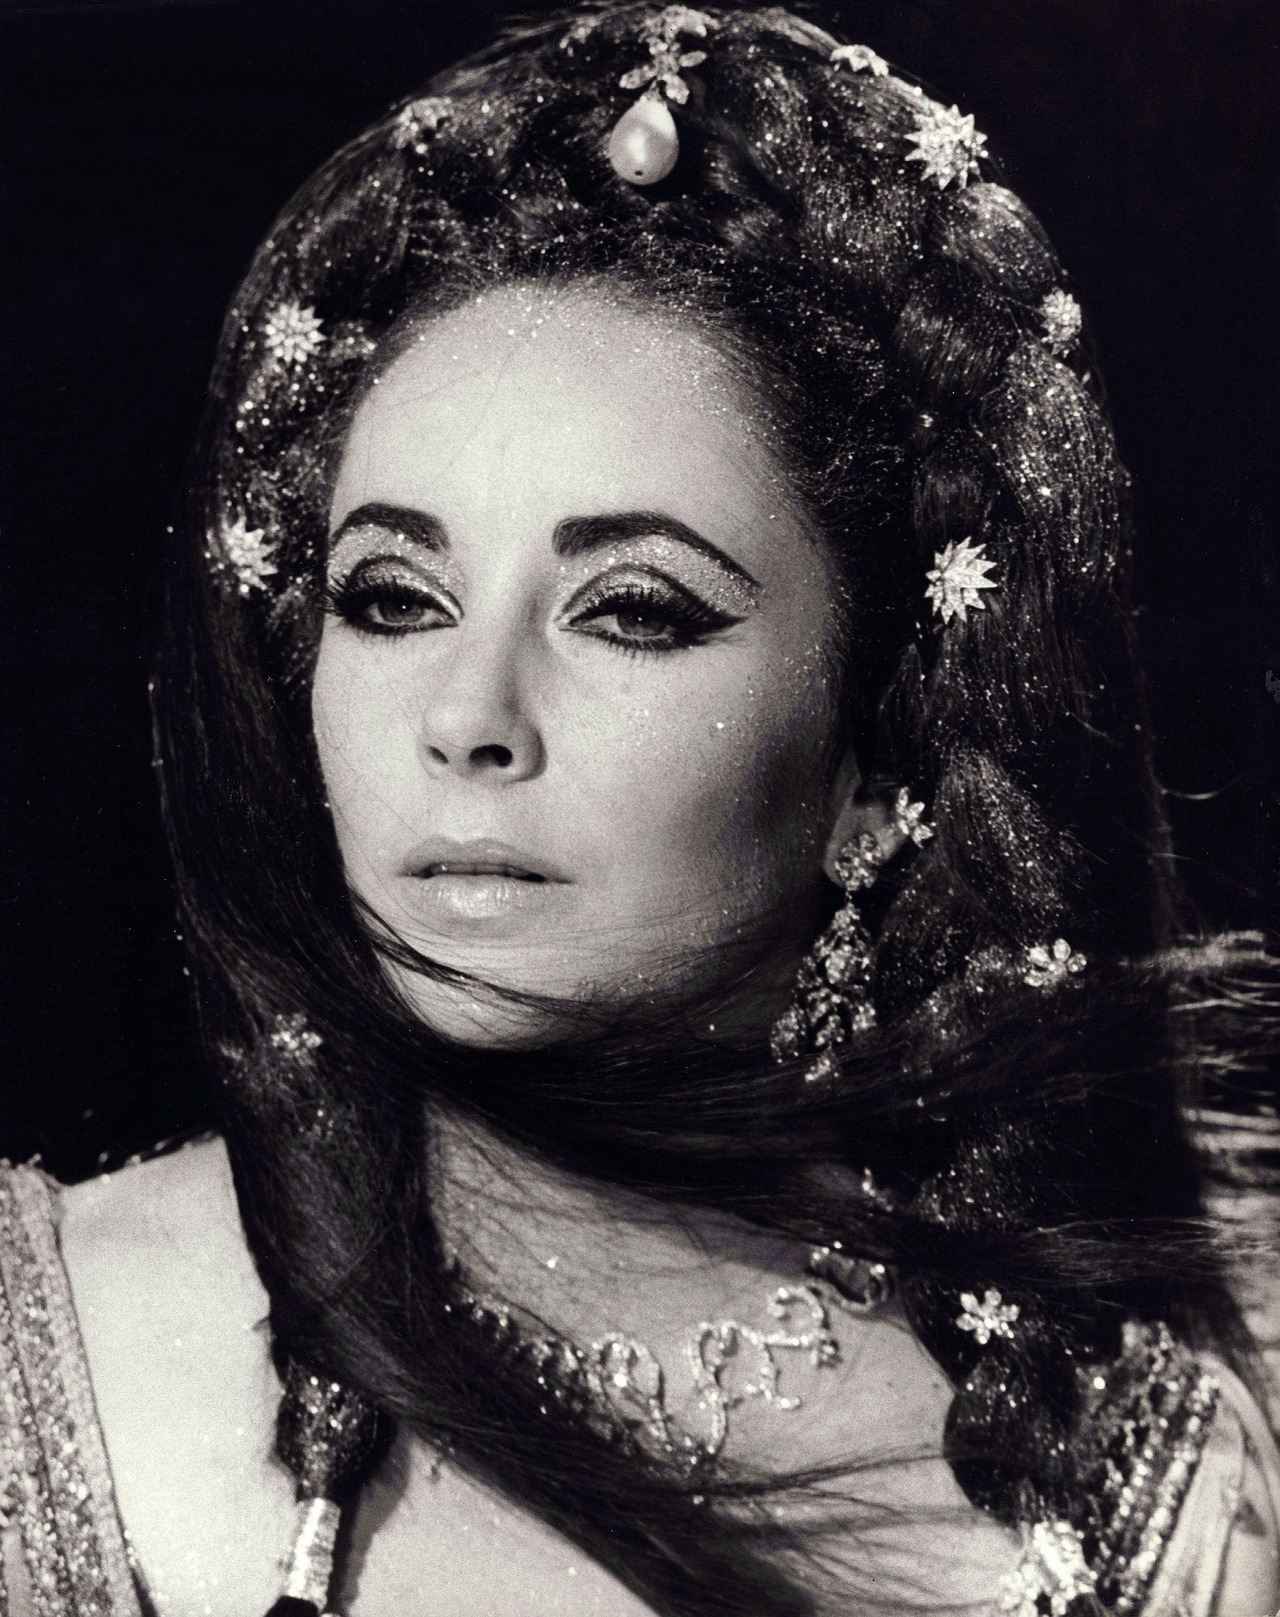 Liz, Doctor Faustus, 1967